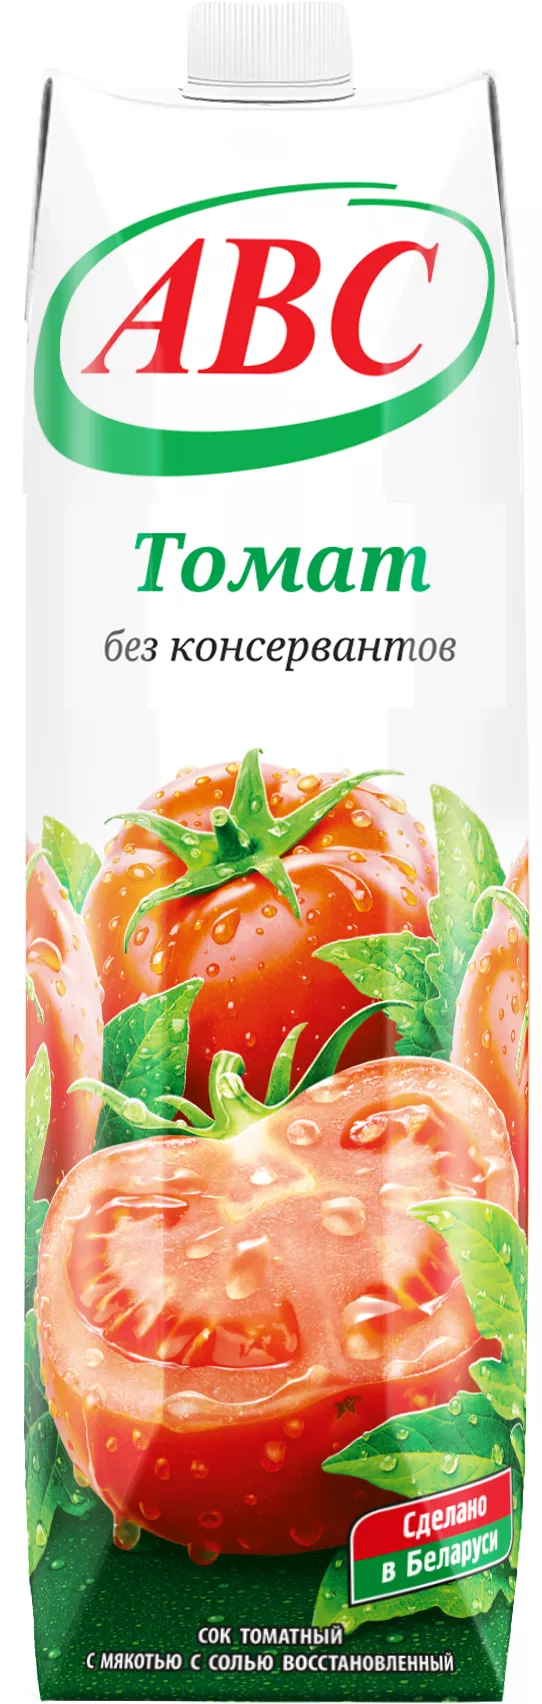 соки, нектары оптом в Республике Беларусь 2